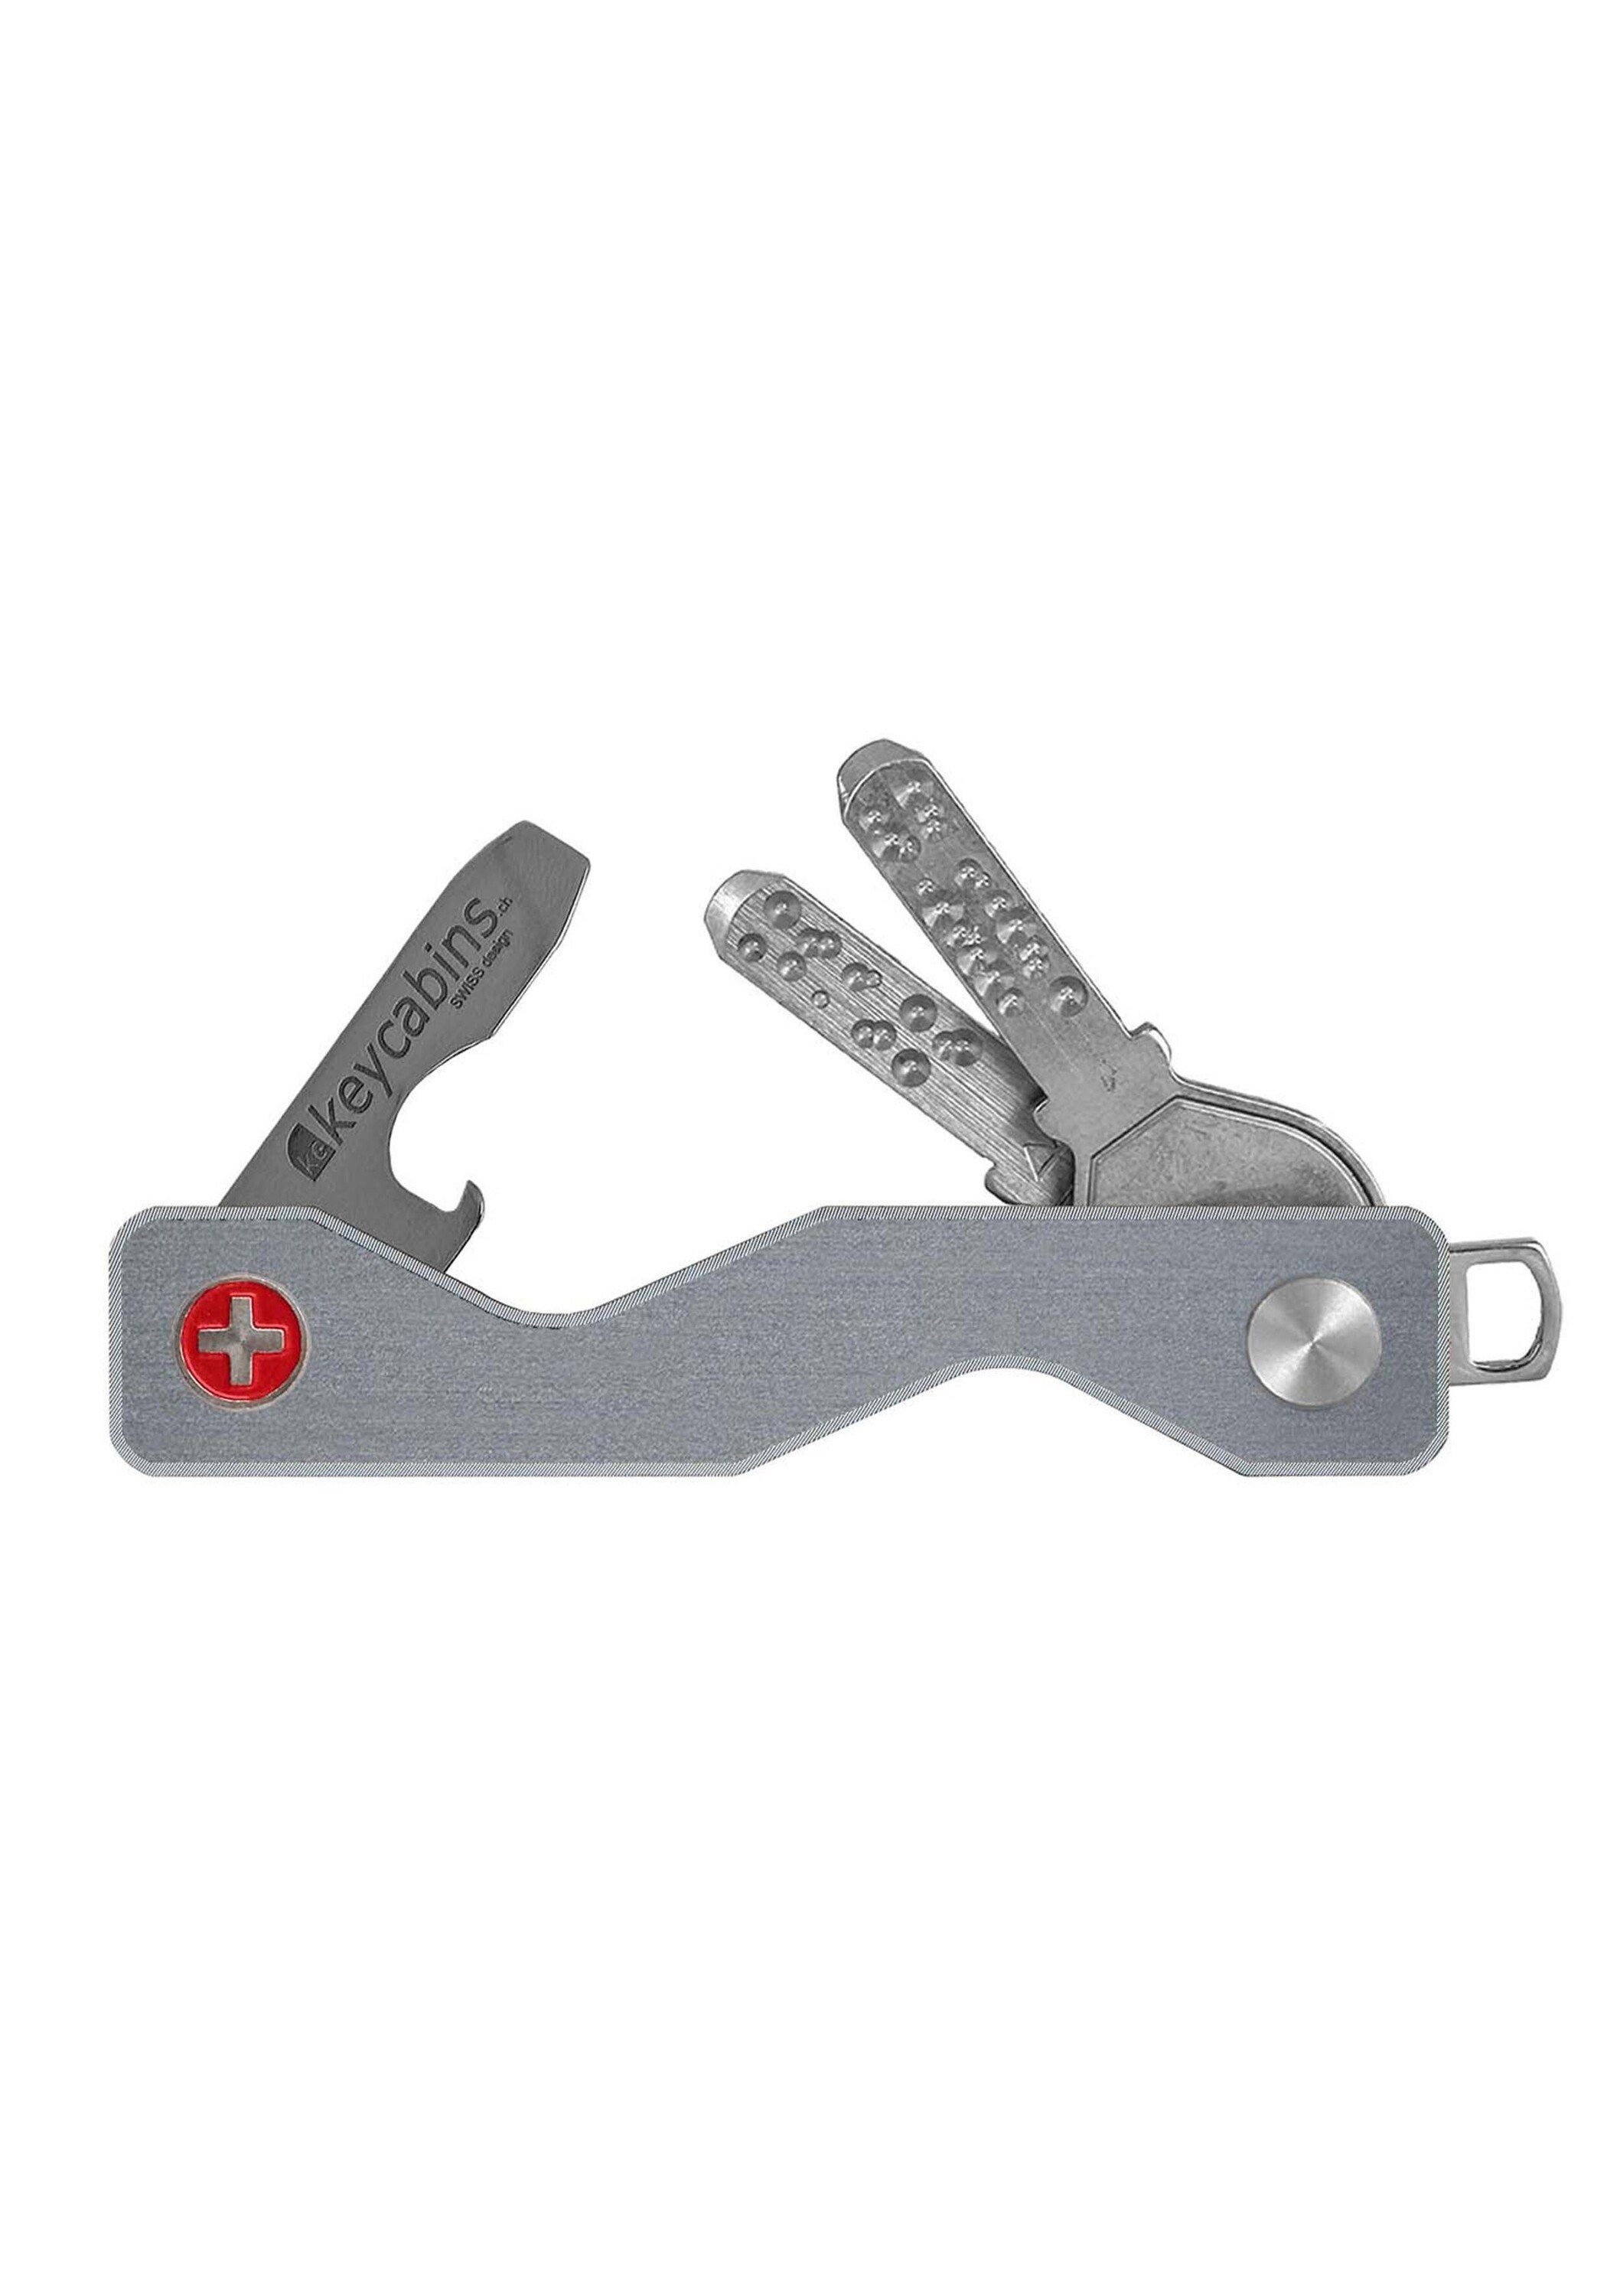 Schlüsselanhänger made Aluminium frame grau S3, SWISS keycabins